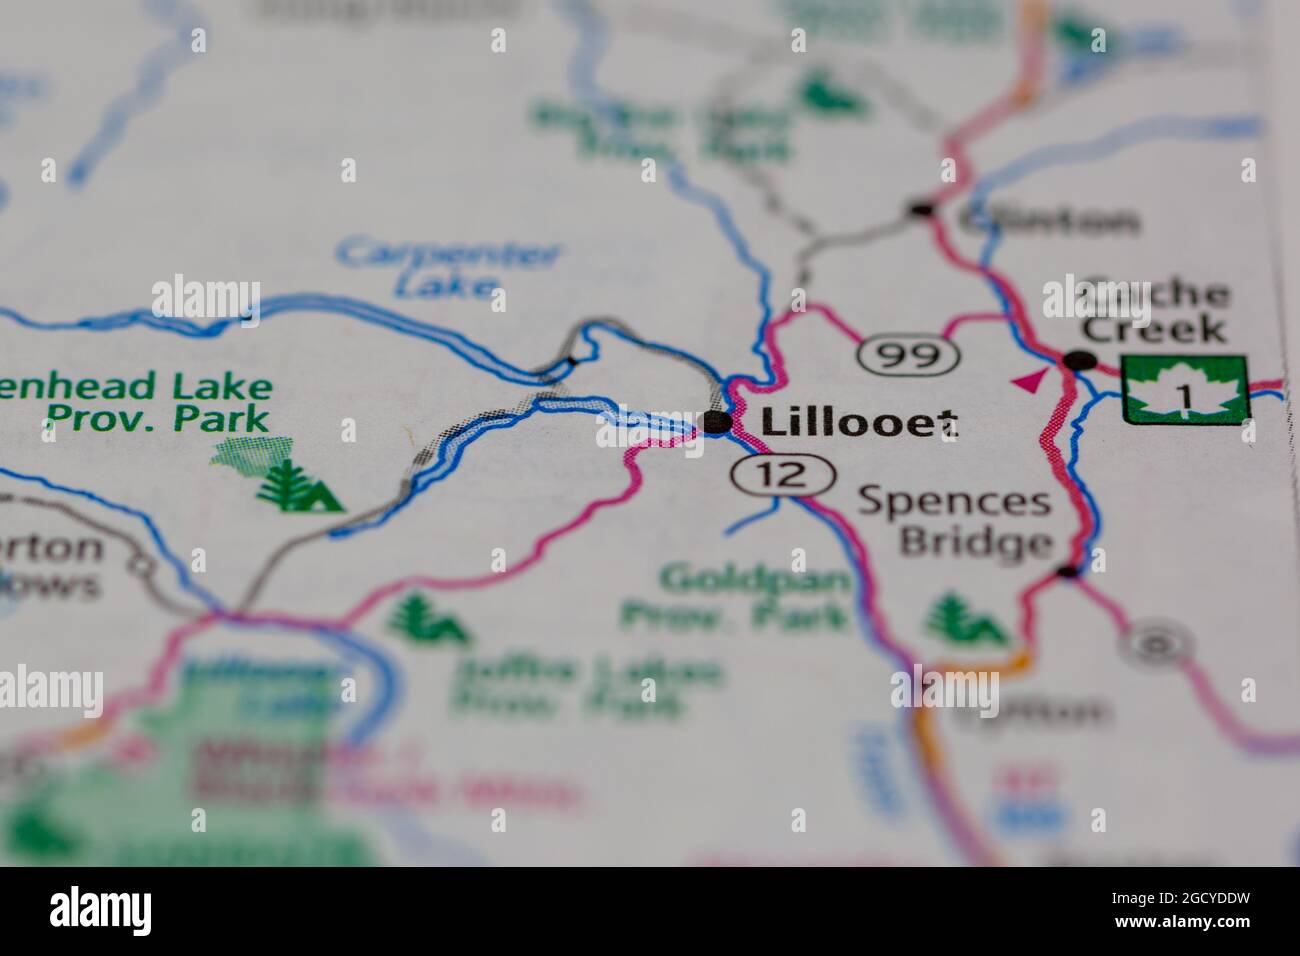 Lillooet Colombie-Britannique Canada sur une carte routière ou une carte de géographie Banque D'Images